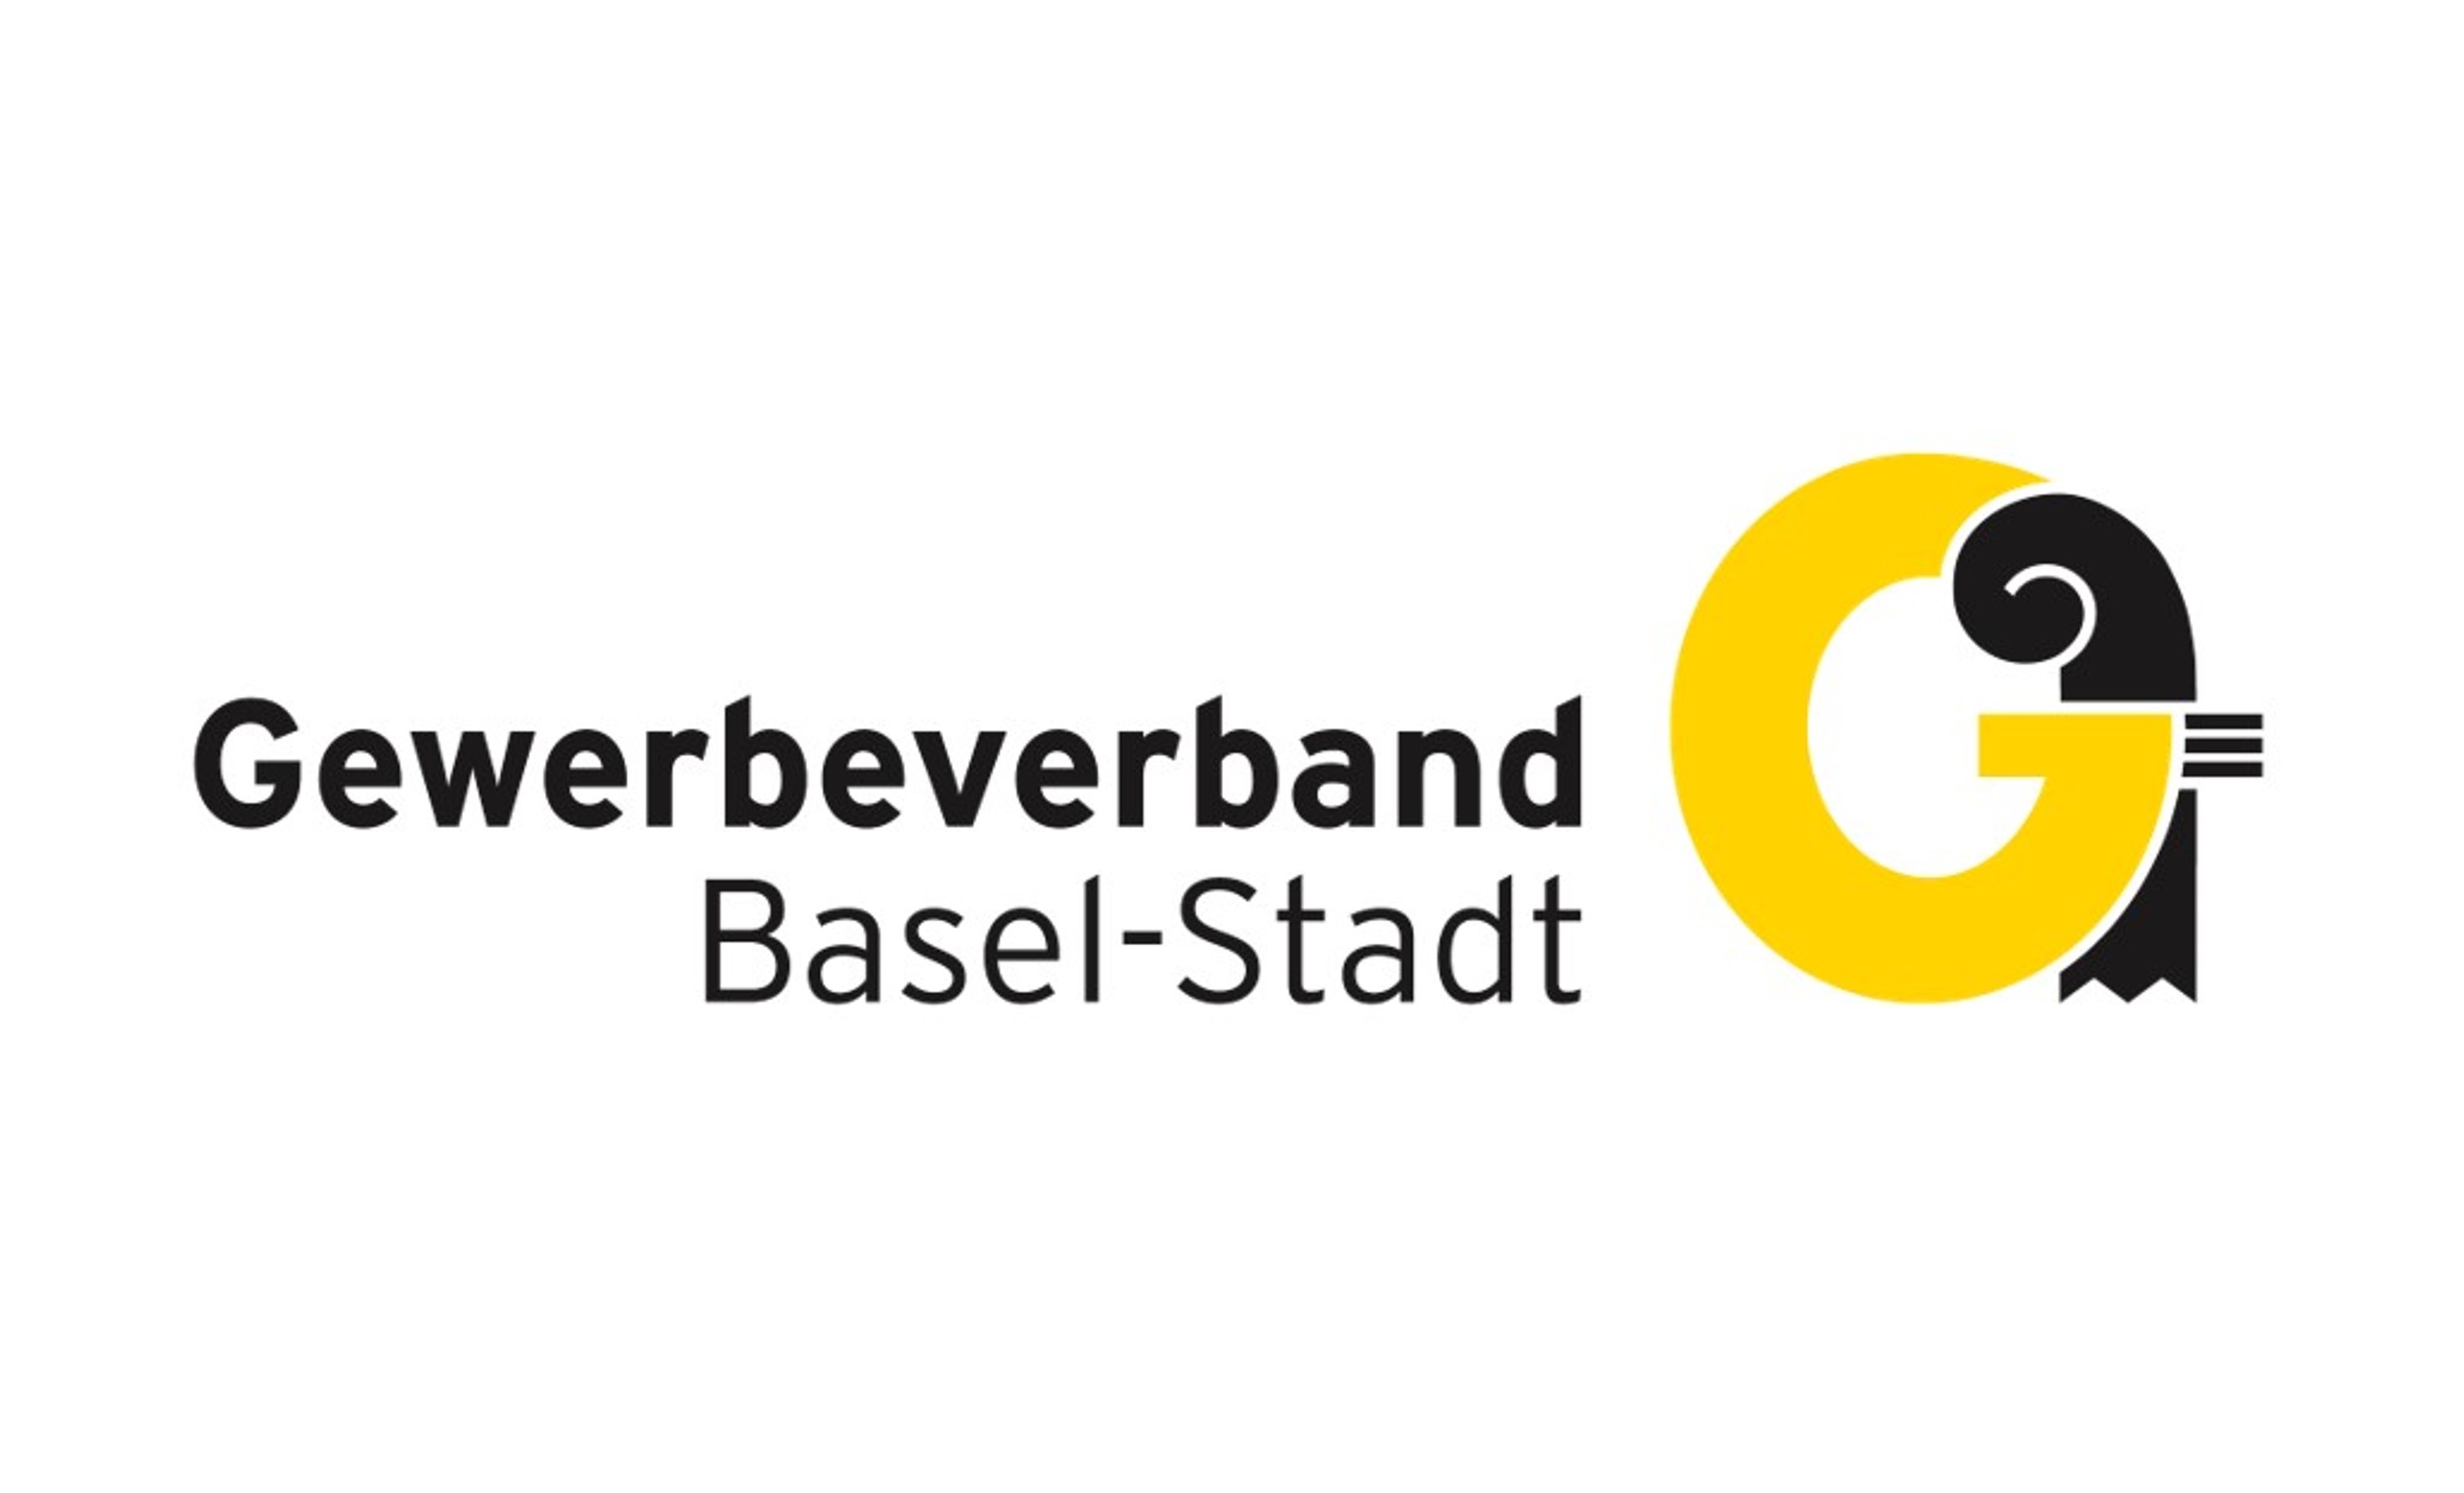 Gewerbeverband Basel-Stadt